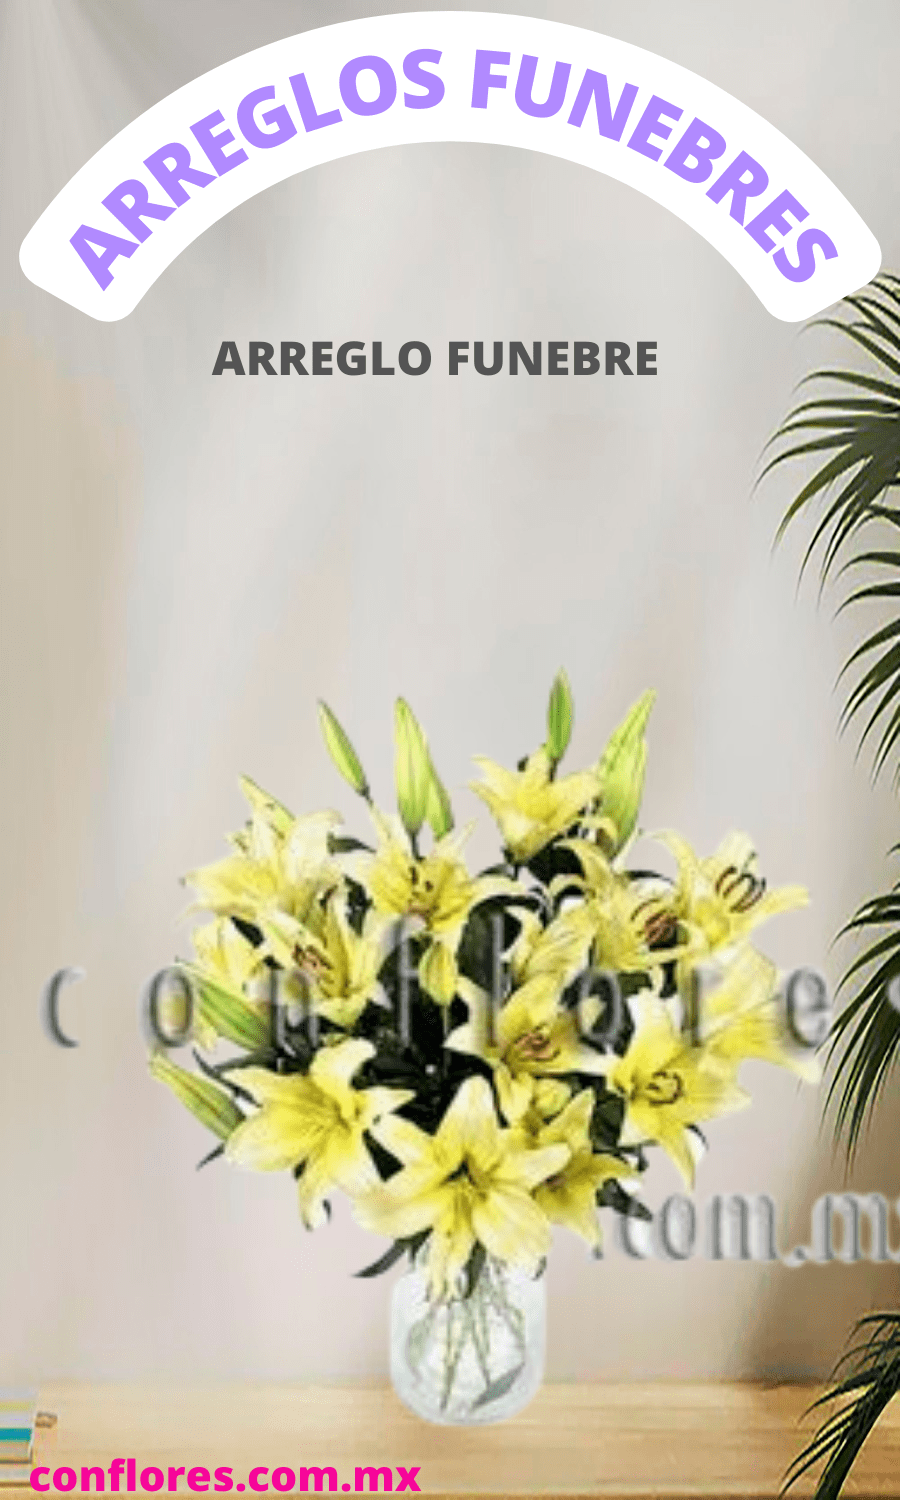 Arreglos Fúnebres de Lilies Casablanca - Florería conflores